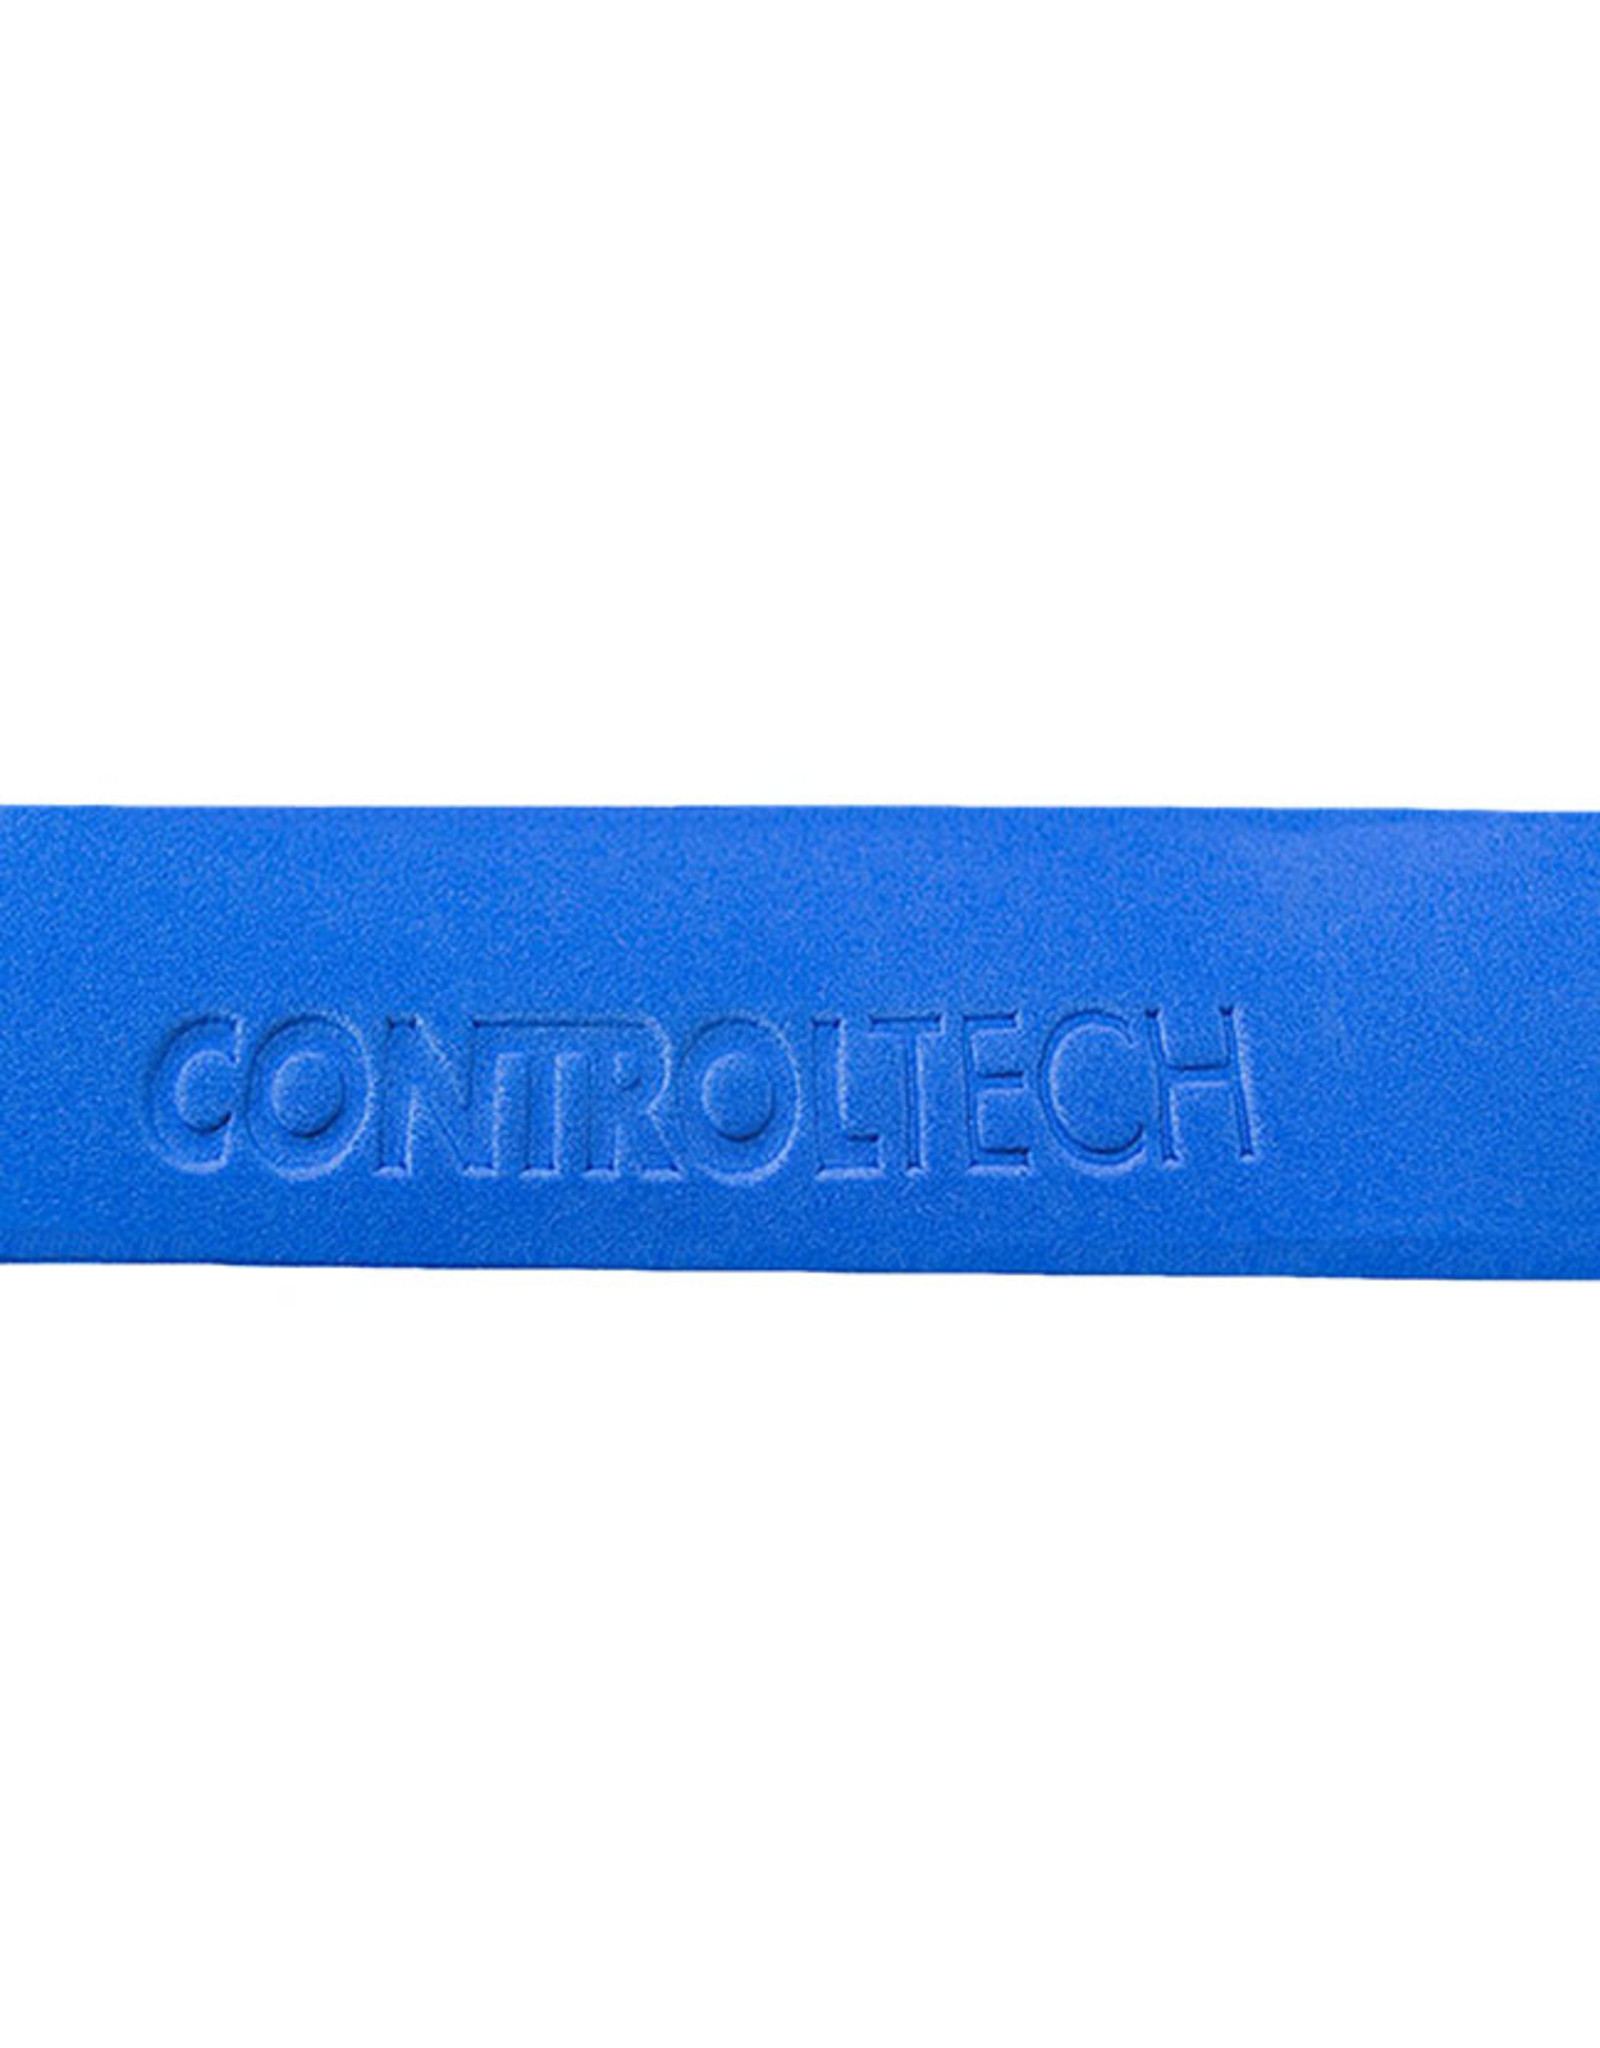 ControlTech ControlTech Handlebar Tape